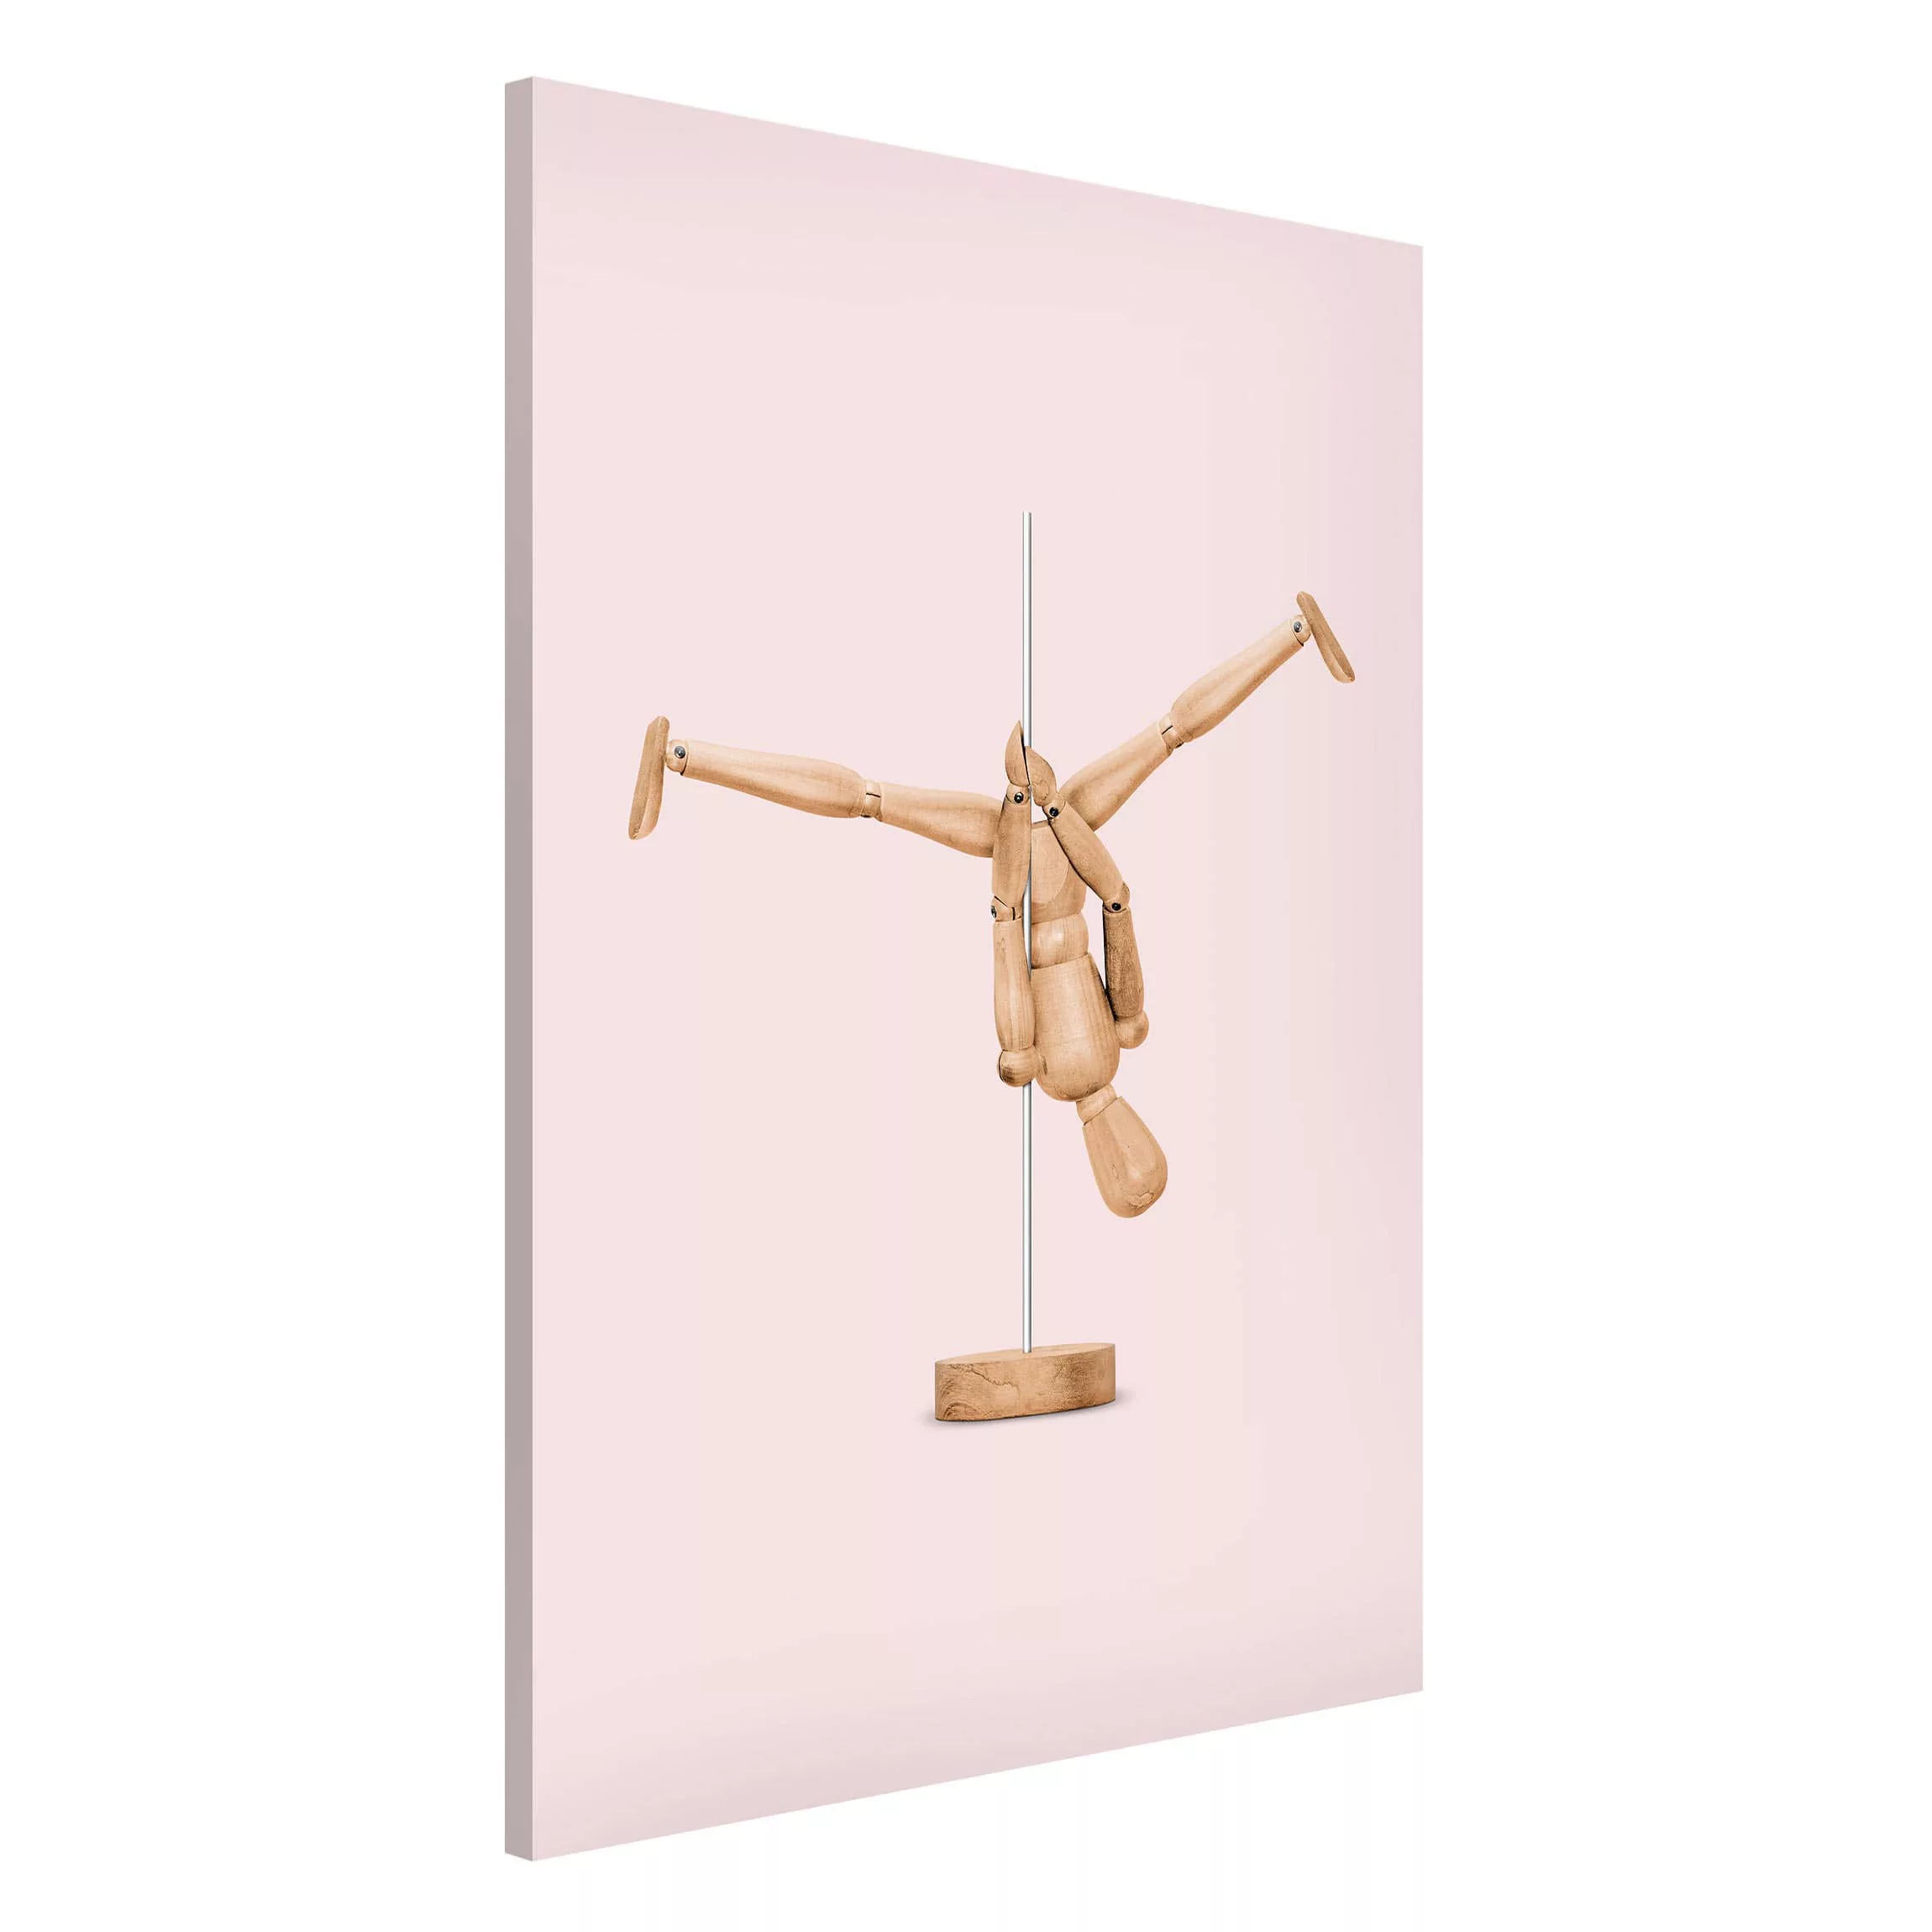 Magnettafel Kunstdruck - Hochformat 2:3 Poledance mit Holzfigur günstig online kaufen